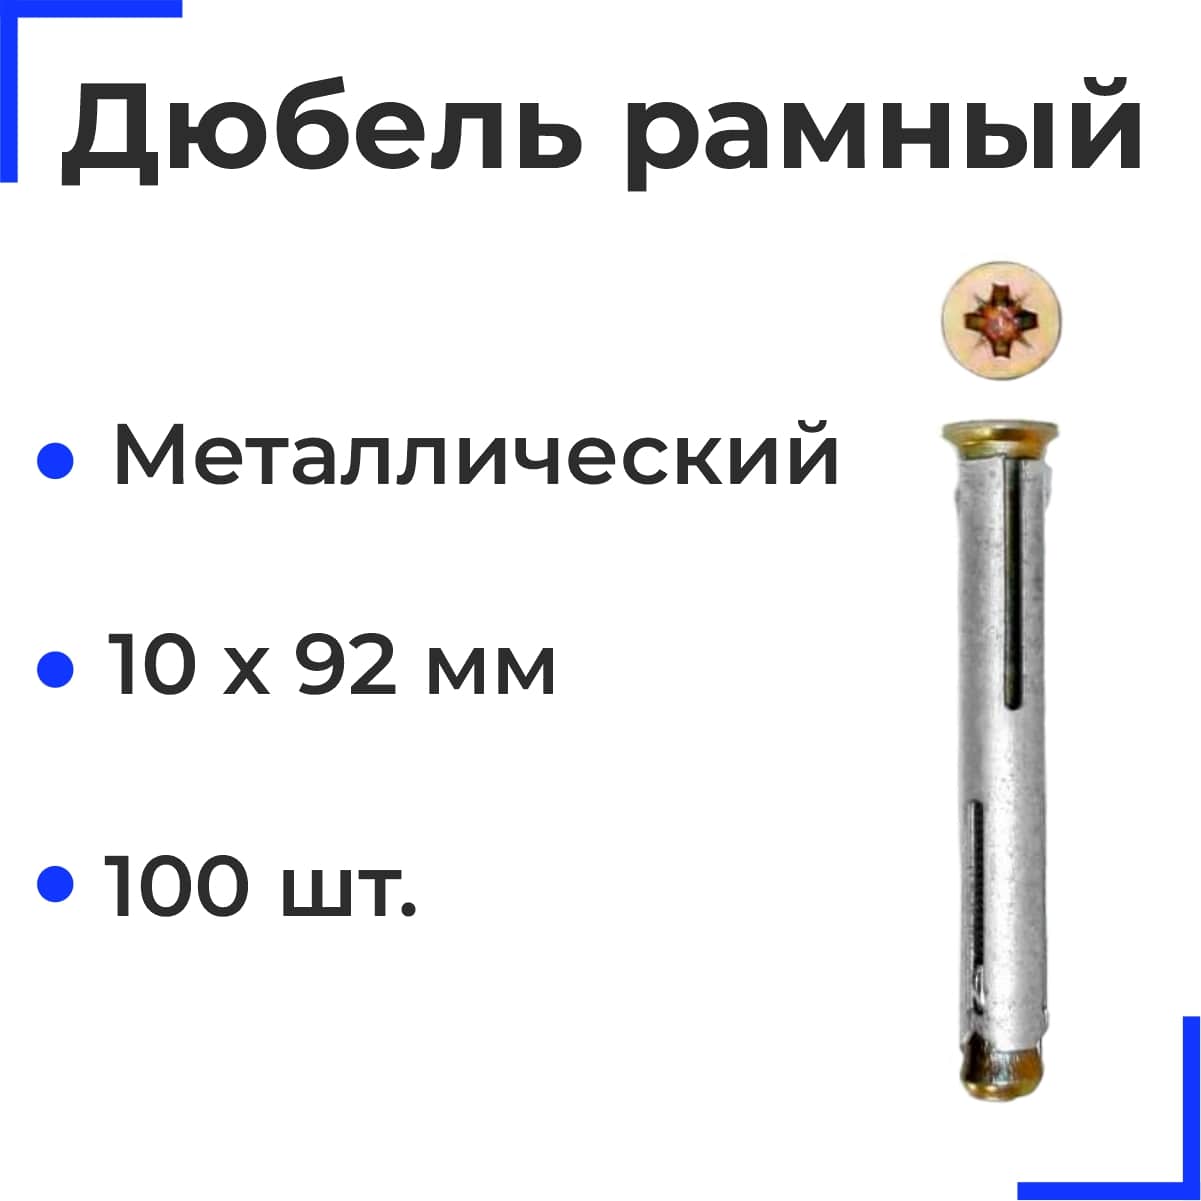 Металлический рамный дюбель 10х92 (100 шт)